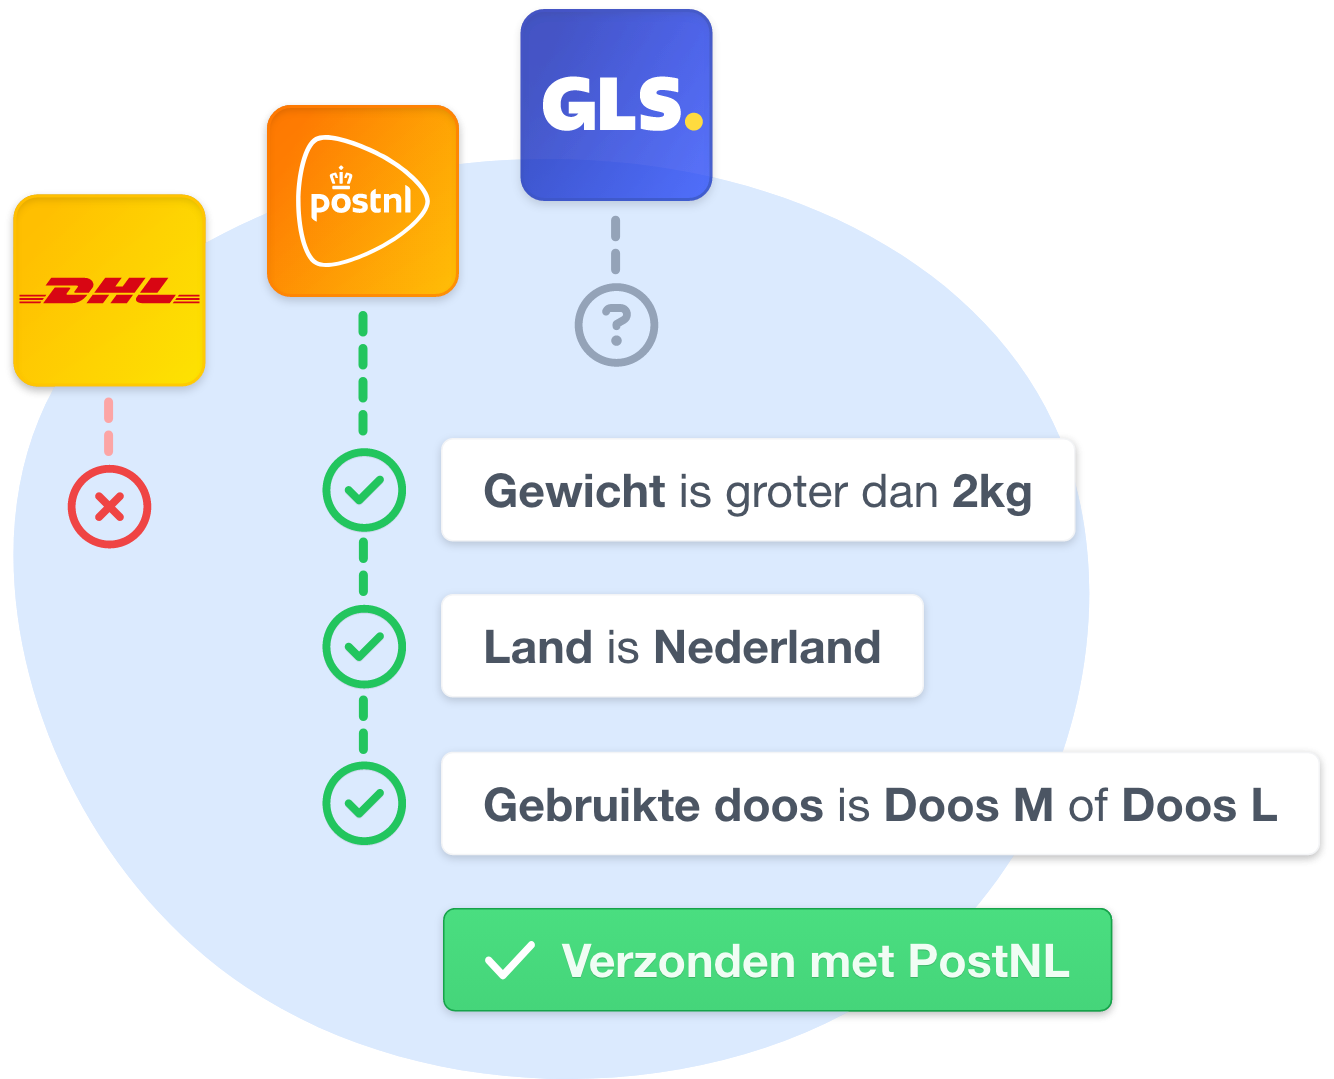 Stroomdiagram van verzendautomatisering waarbij wordt beslist tussen DHL, PostNL, en GLS op basis van gewicht, land en doosgrootte.